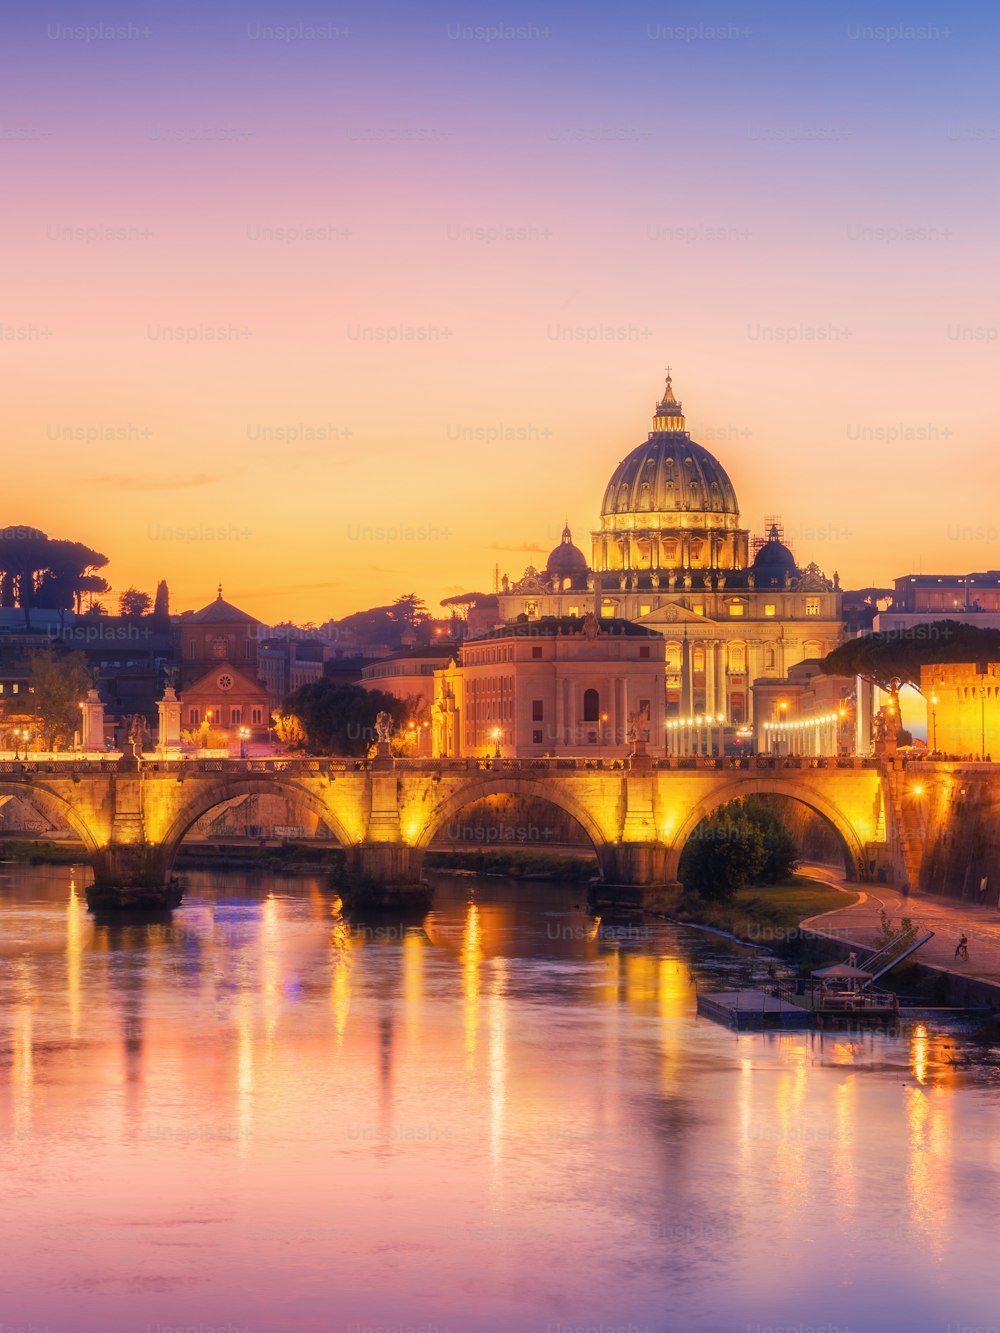 Skyline de Roma com a Basílica de São Pedro do Vaticano e a Ponte de Santo Ângelo cruzando o rio Tibre no centro da cidade de Roma Itália, atração de marcos históricos da Roma Antiga, destino de viagem da Itália.